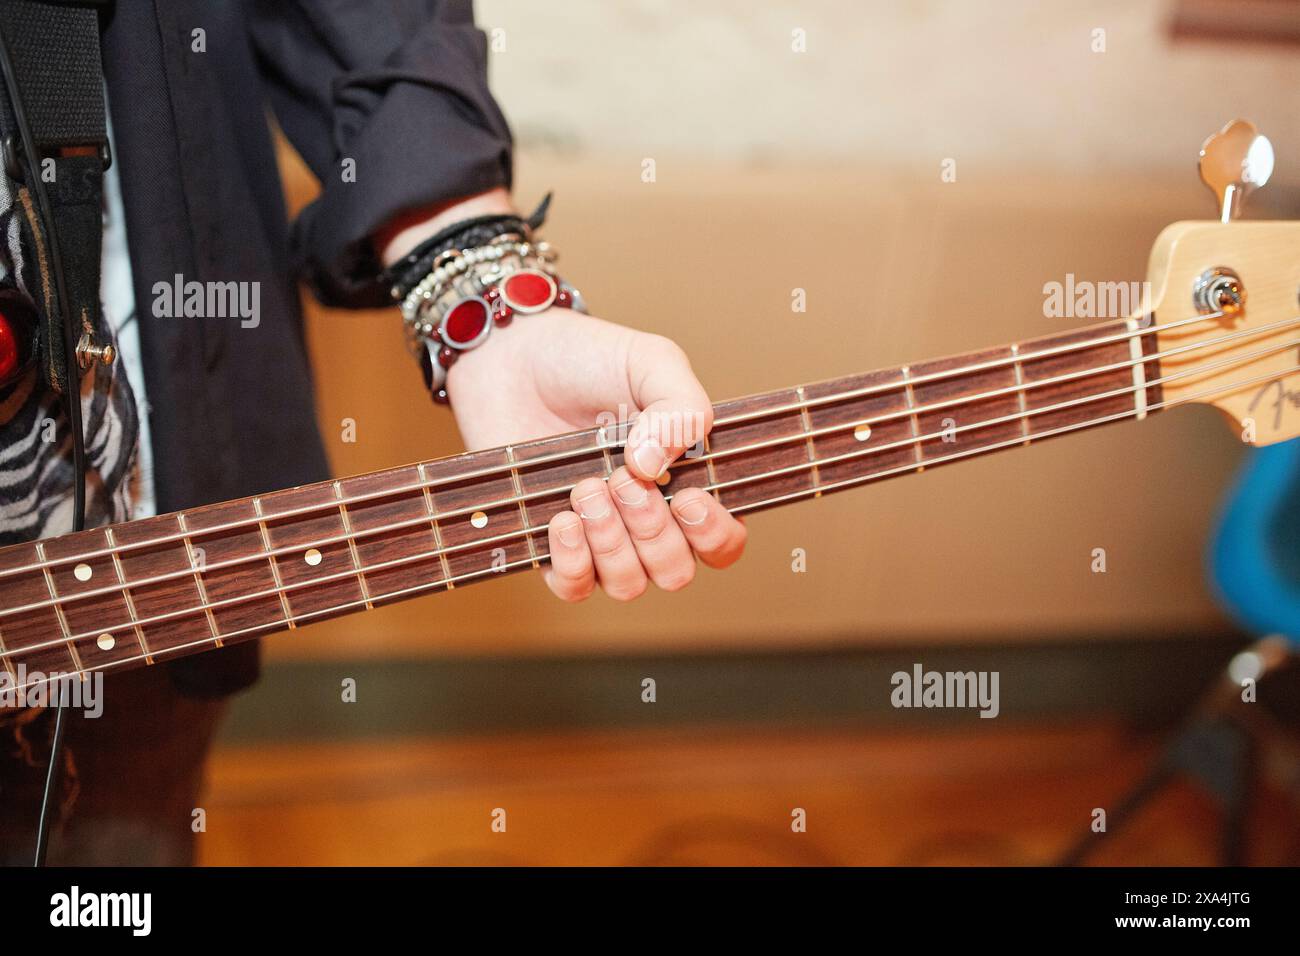 Vista ravvicinata della mano sinistra di una persona che suona la tastiera di una chitarra, con un'attenzione particolare alle dita che premono le corde. Foto Stock